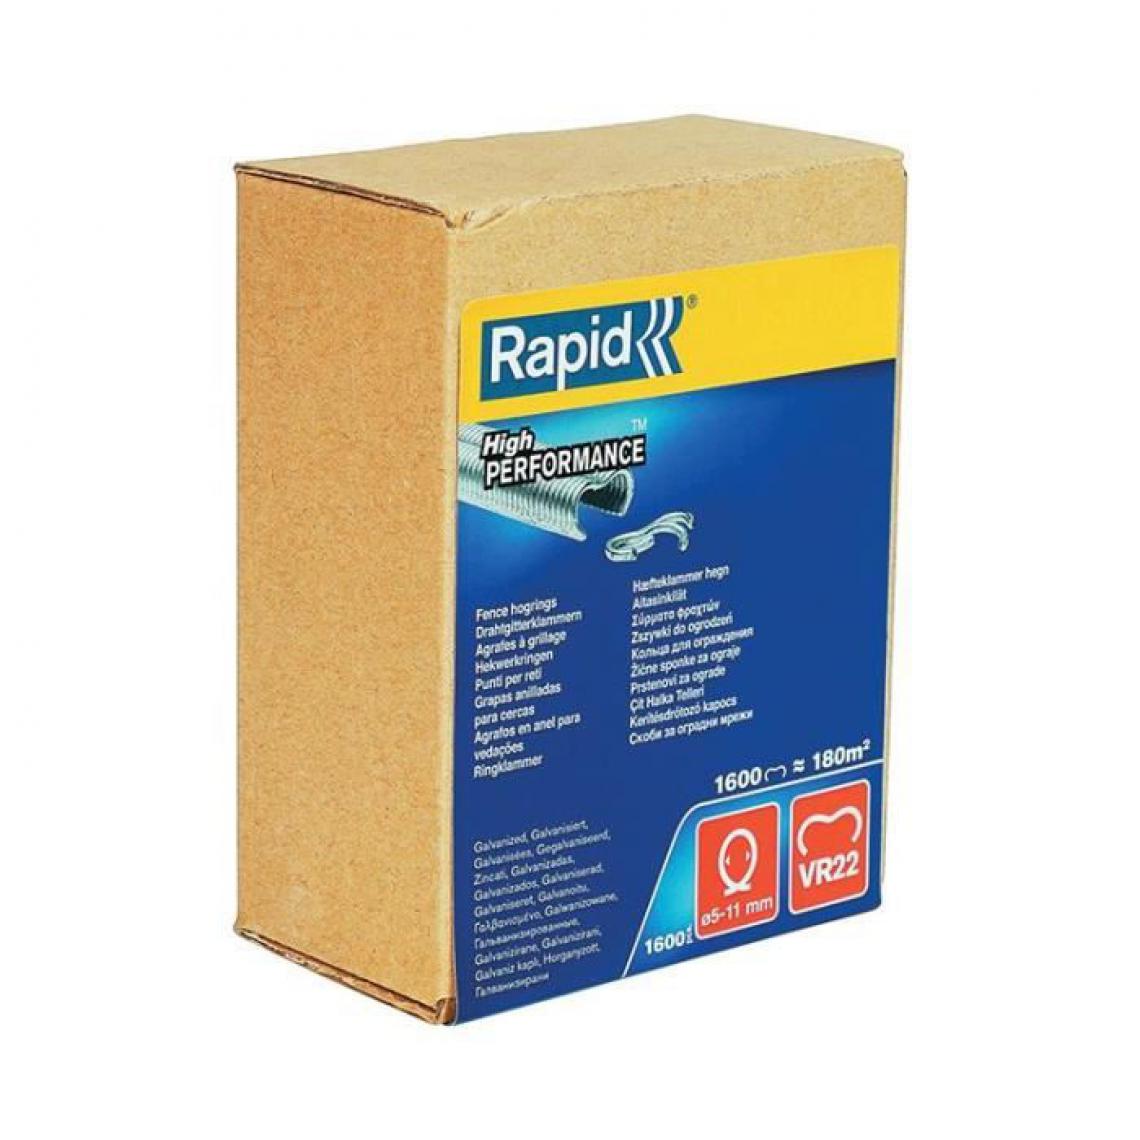 Rapid - RAPID 1600 agrafes VR22 galvanisées - Clouterie